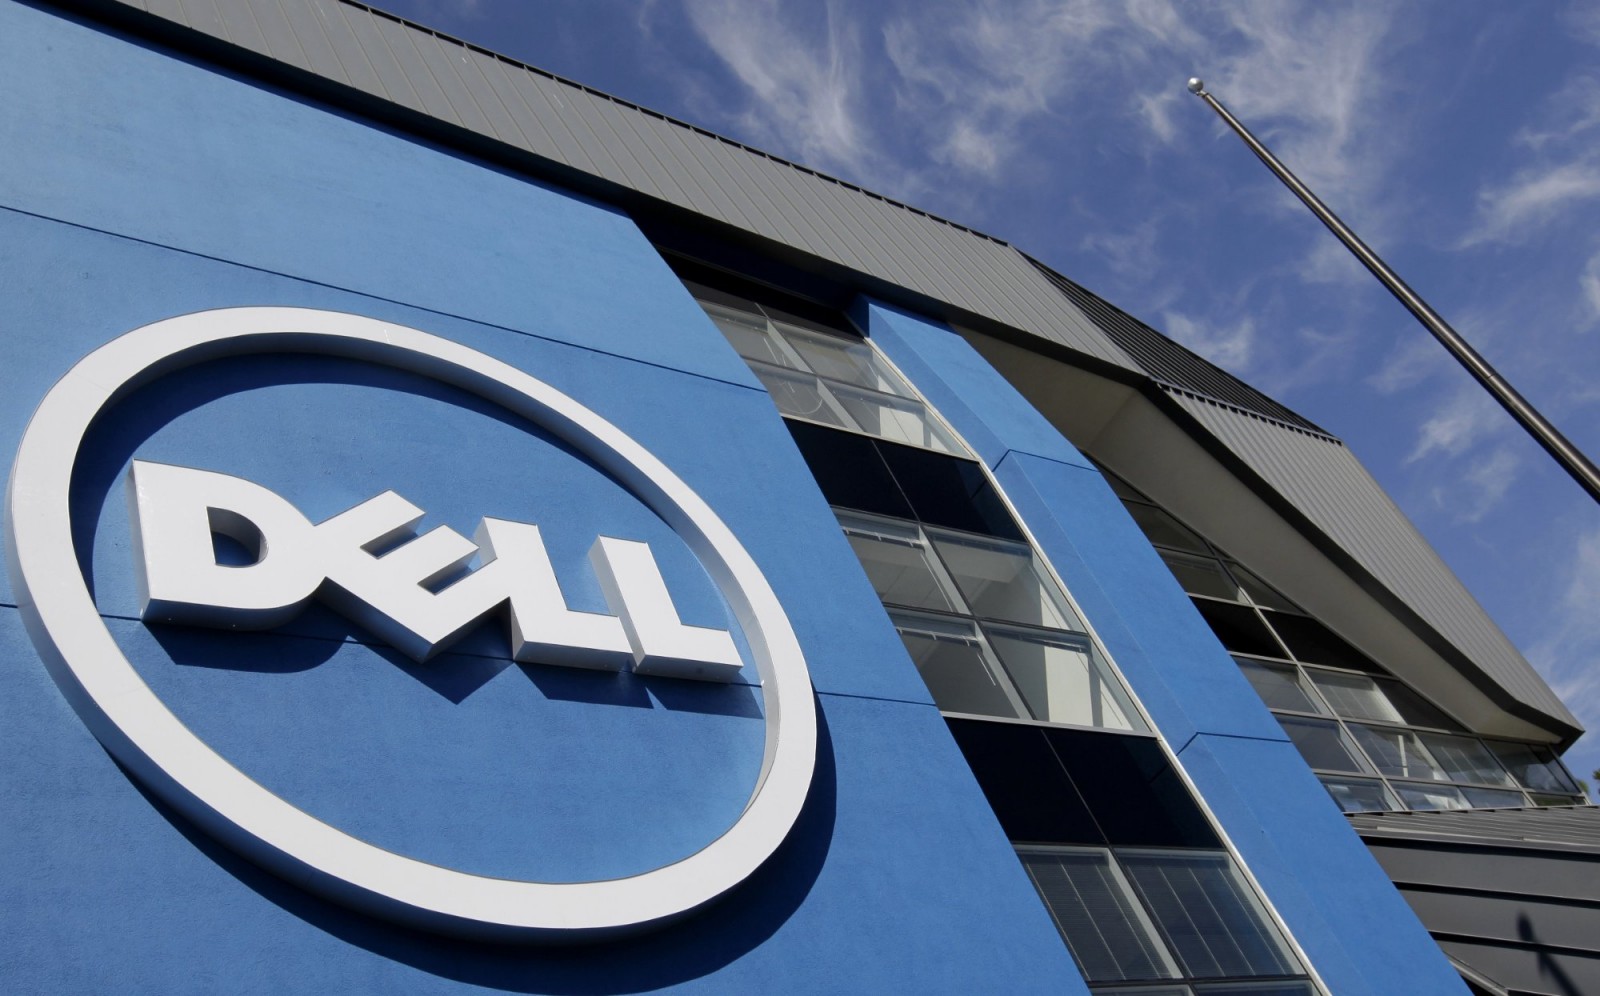 Media: Dell w końcu opuszcza rynek rosyjski i zwalnia cały personel